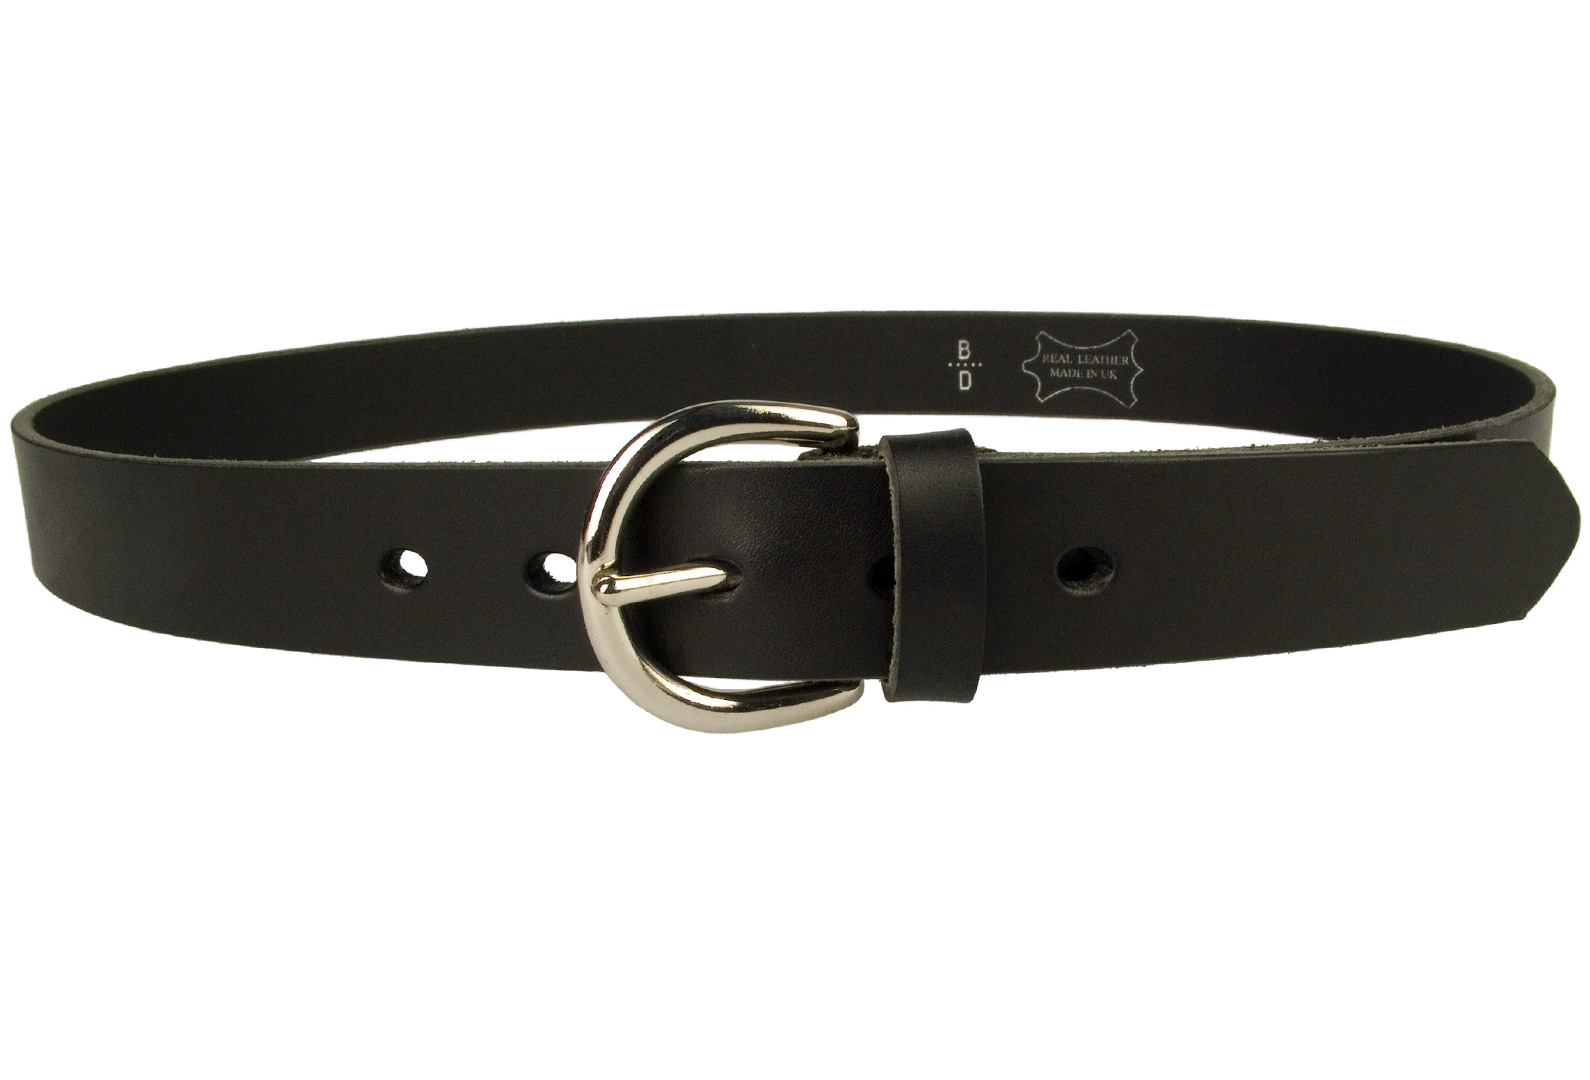 Womens Black Leather Belt Made In UK - Belt Designs